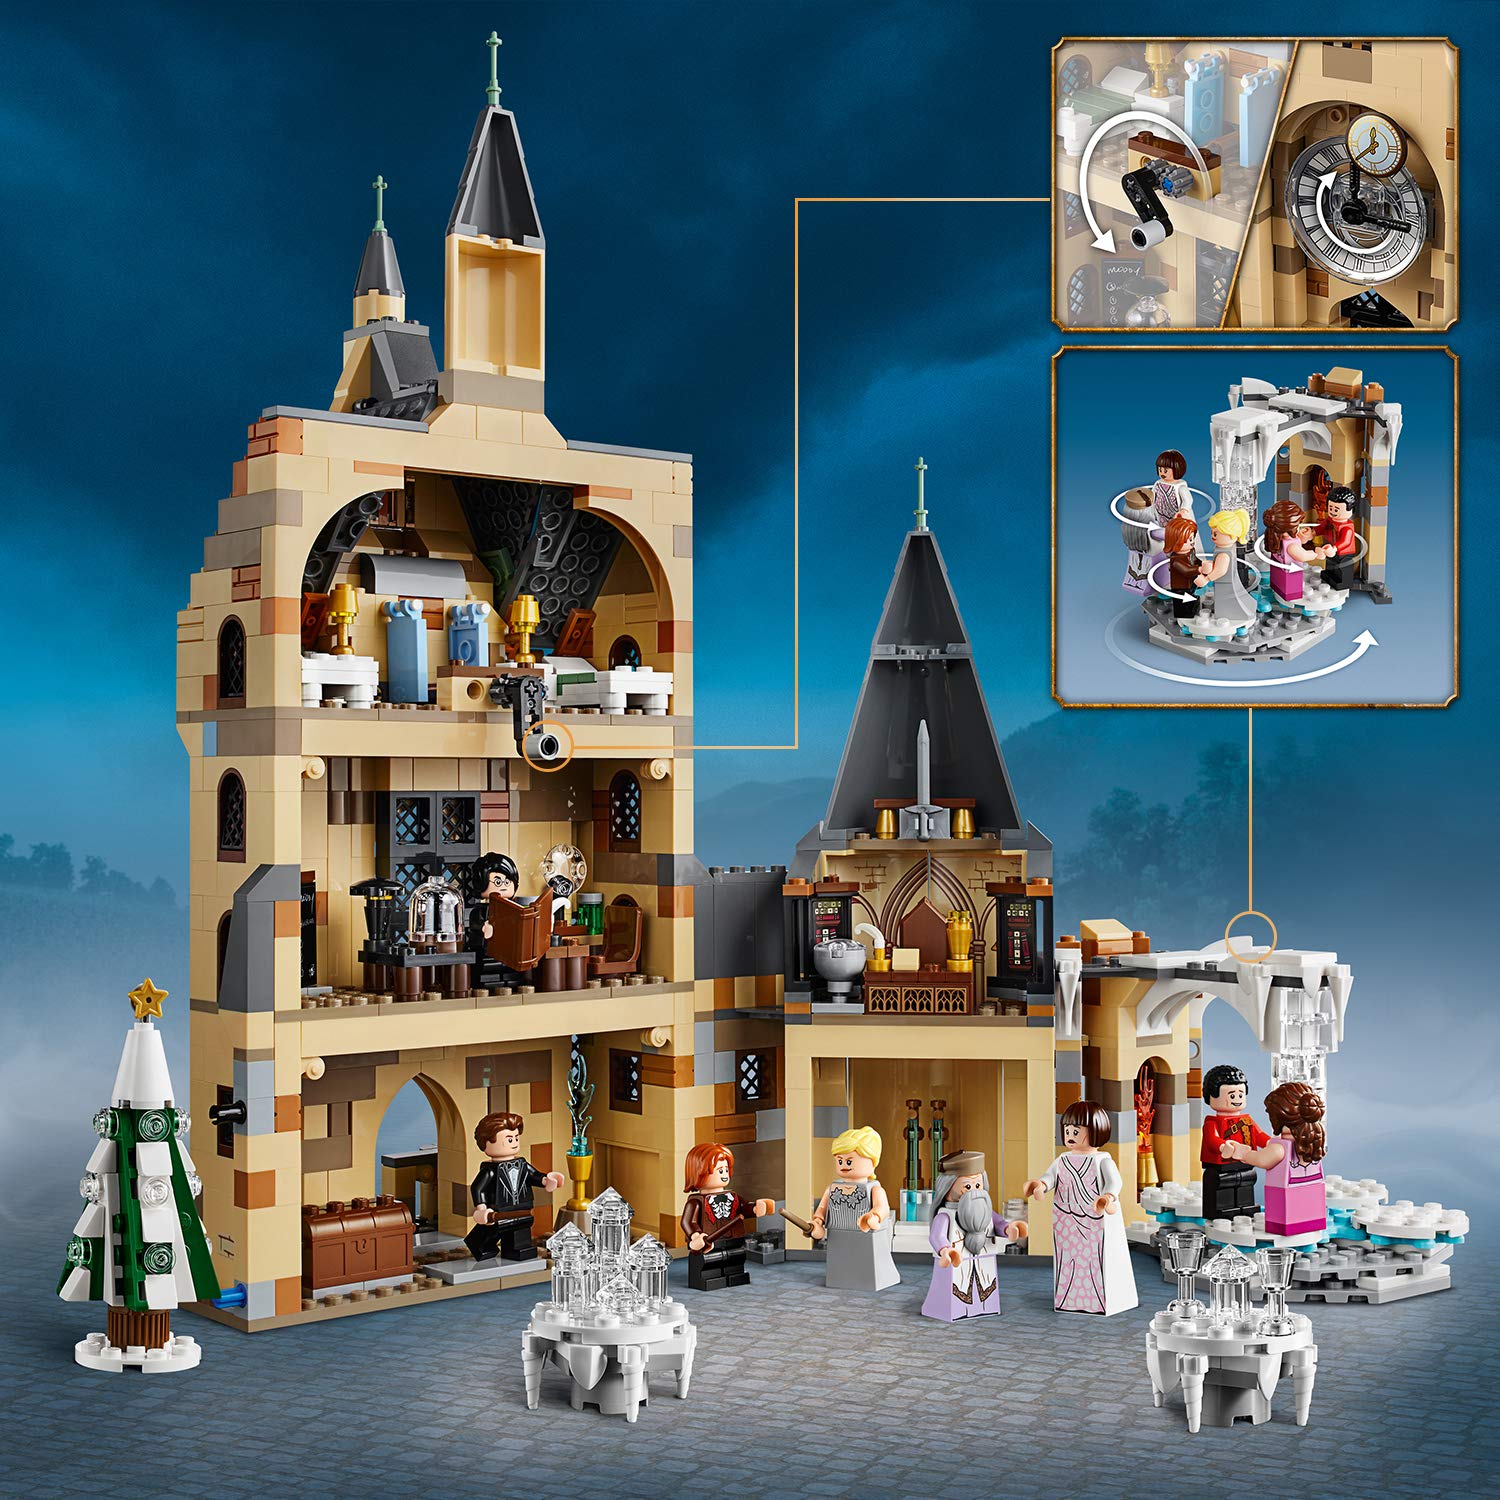 Конструктор Lego Harry Potter - Часовая башня Хогвартса  